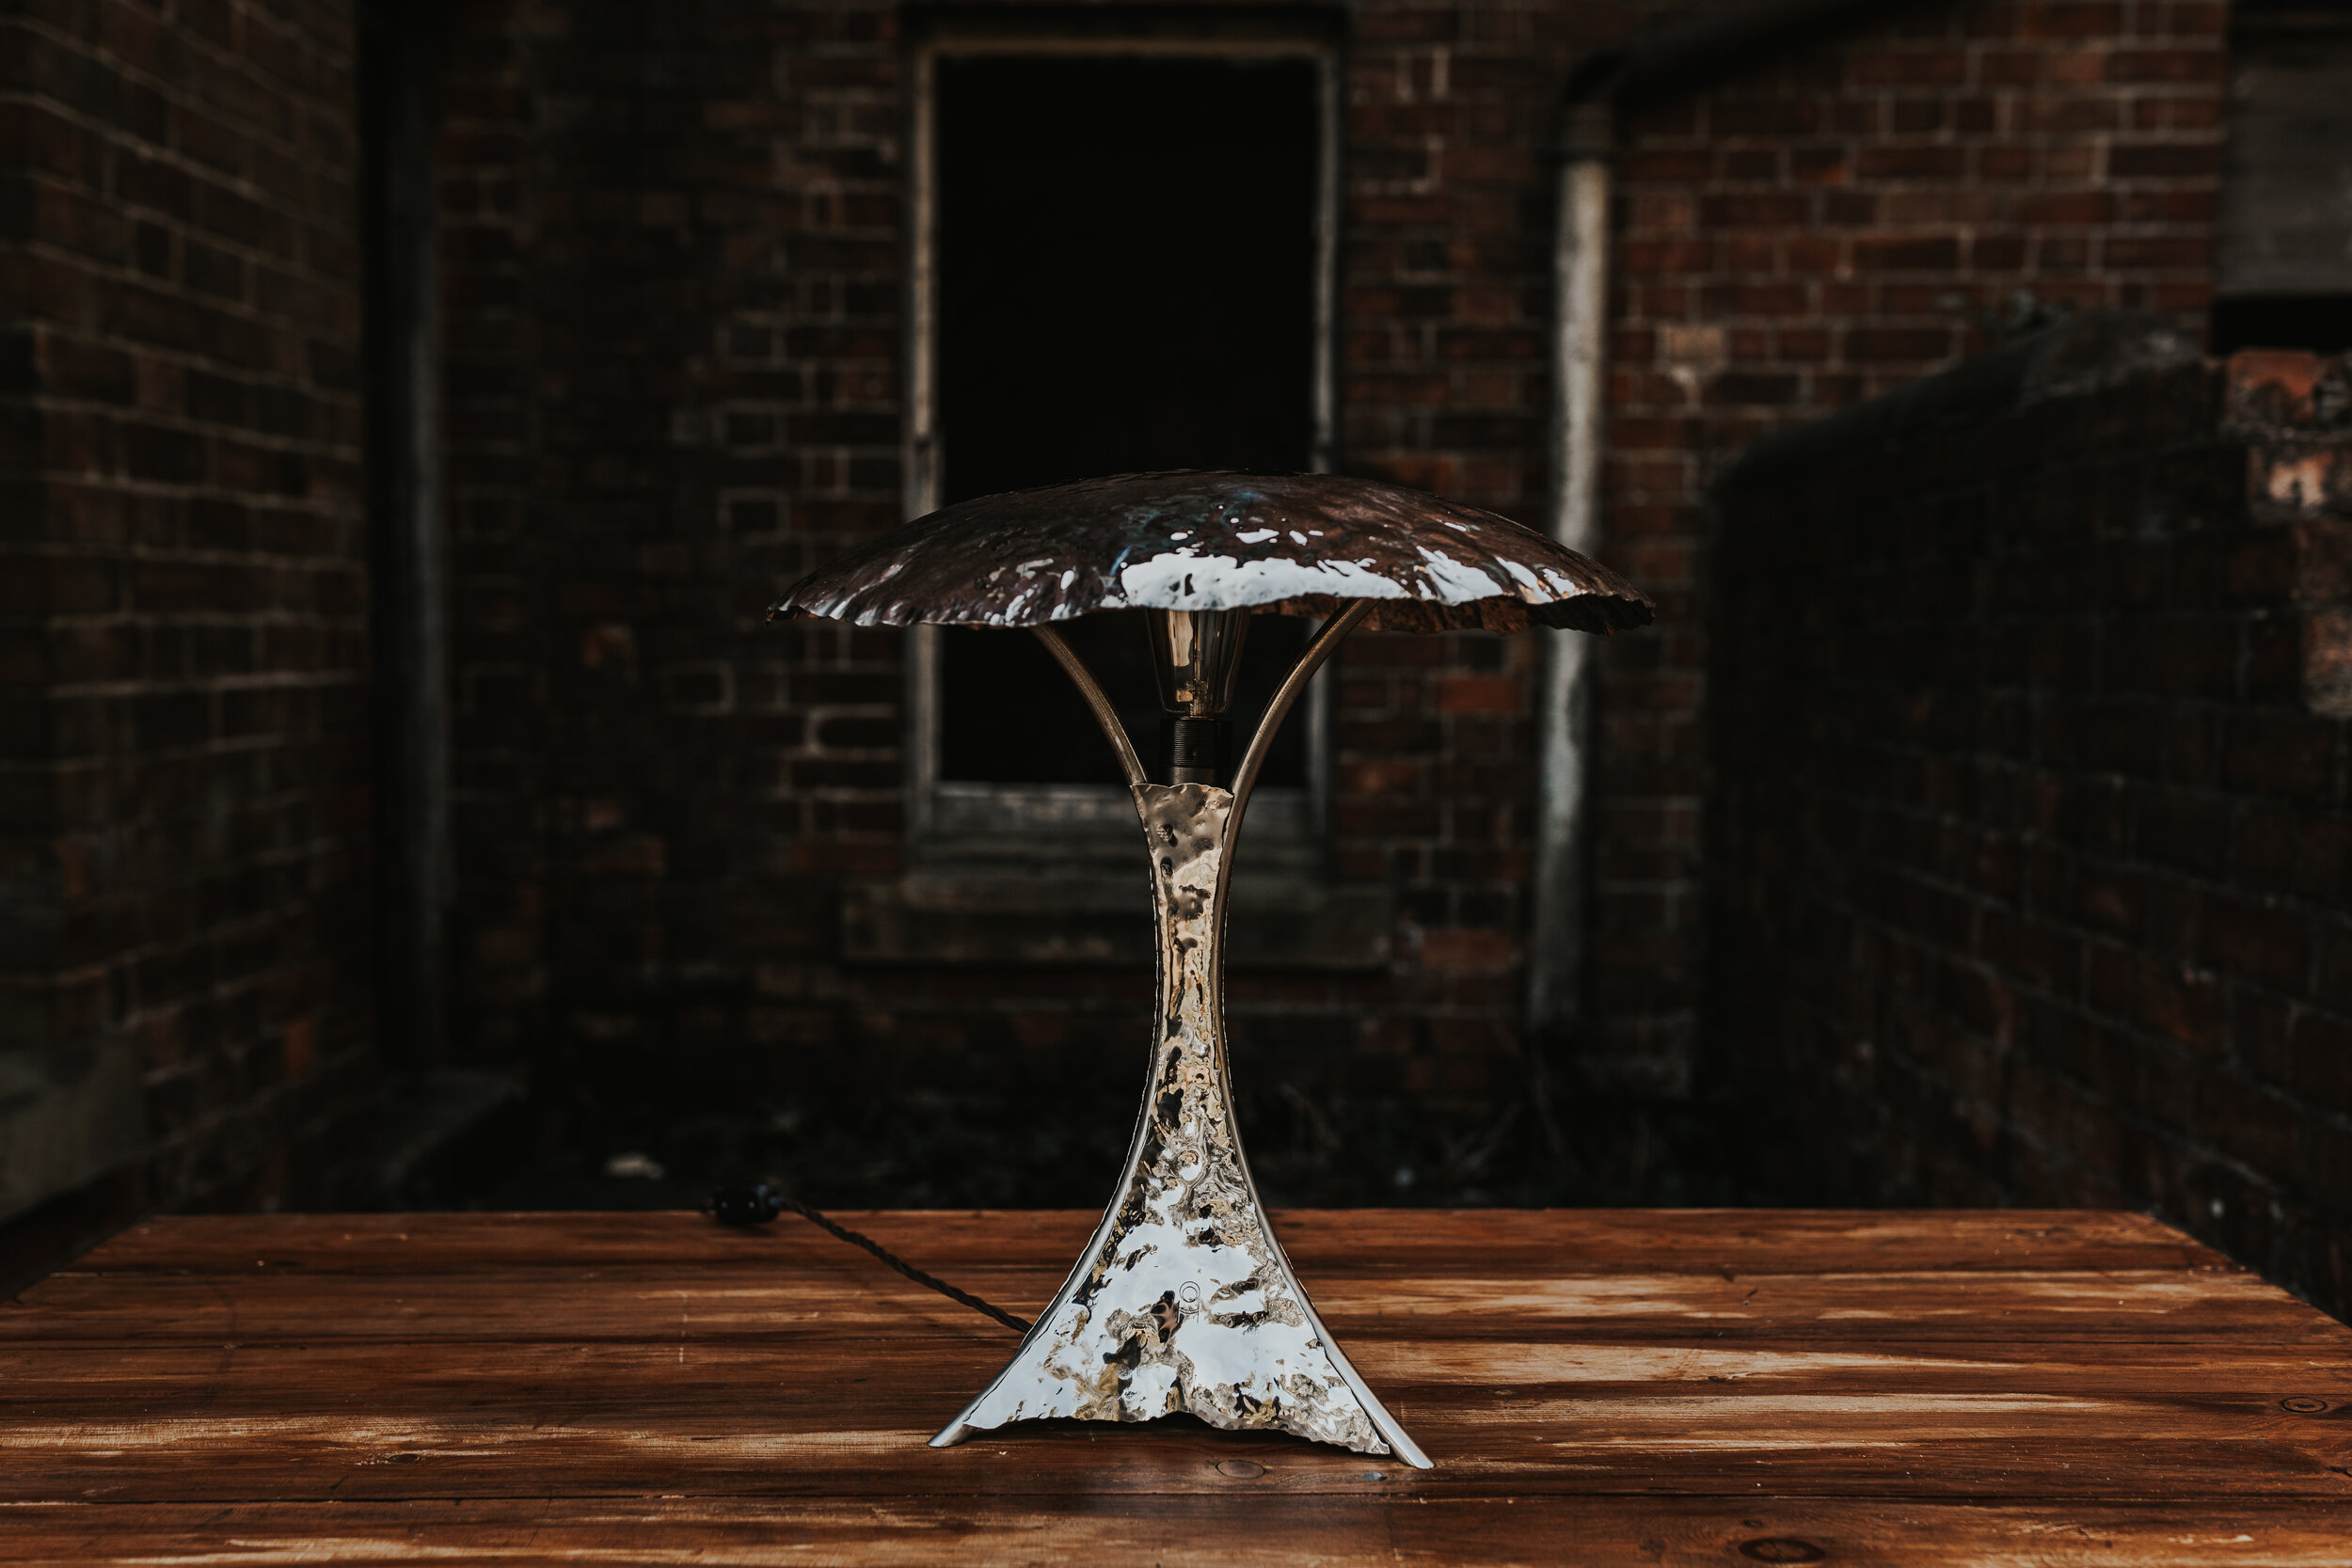 stainless steel Shroom Table Lamp, Sculptural bespoke Steel  Lighting